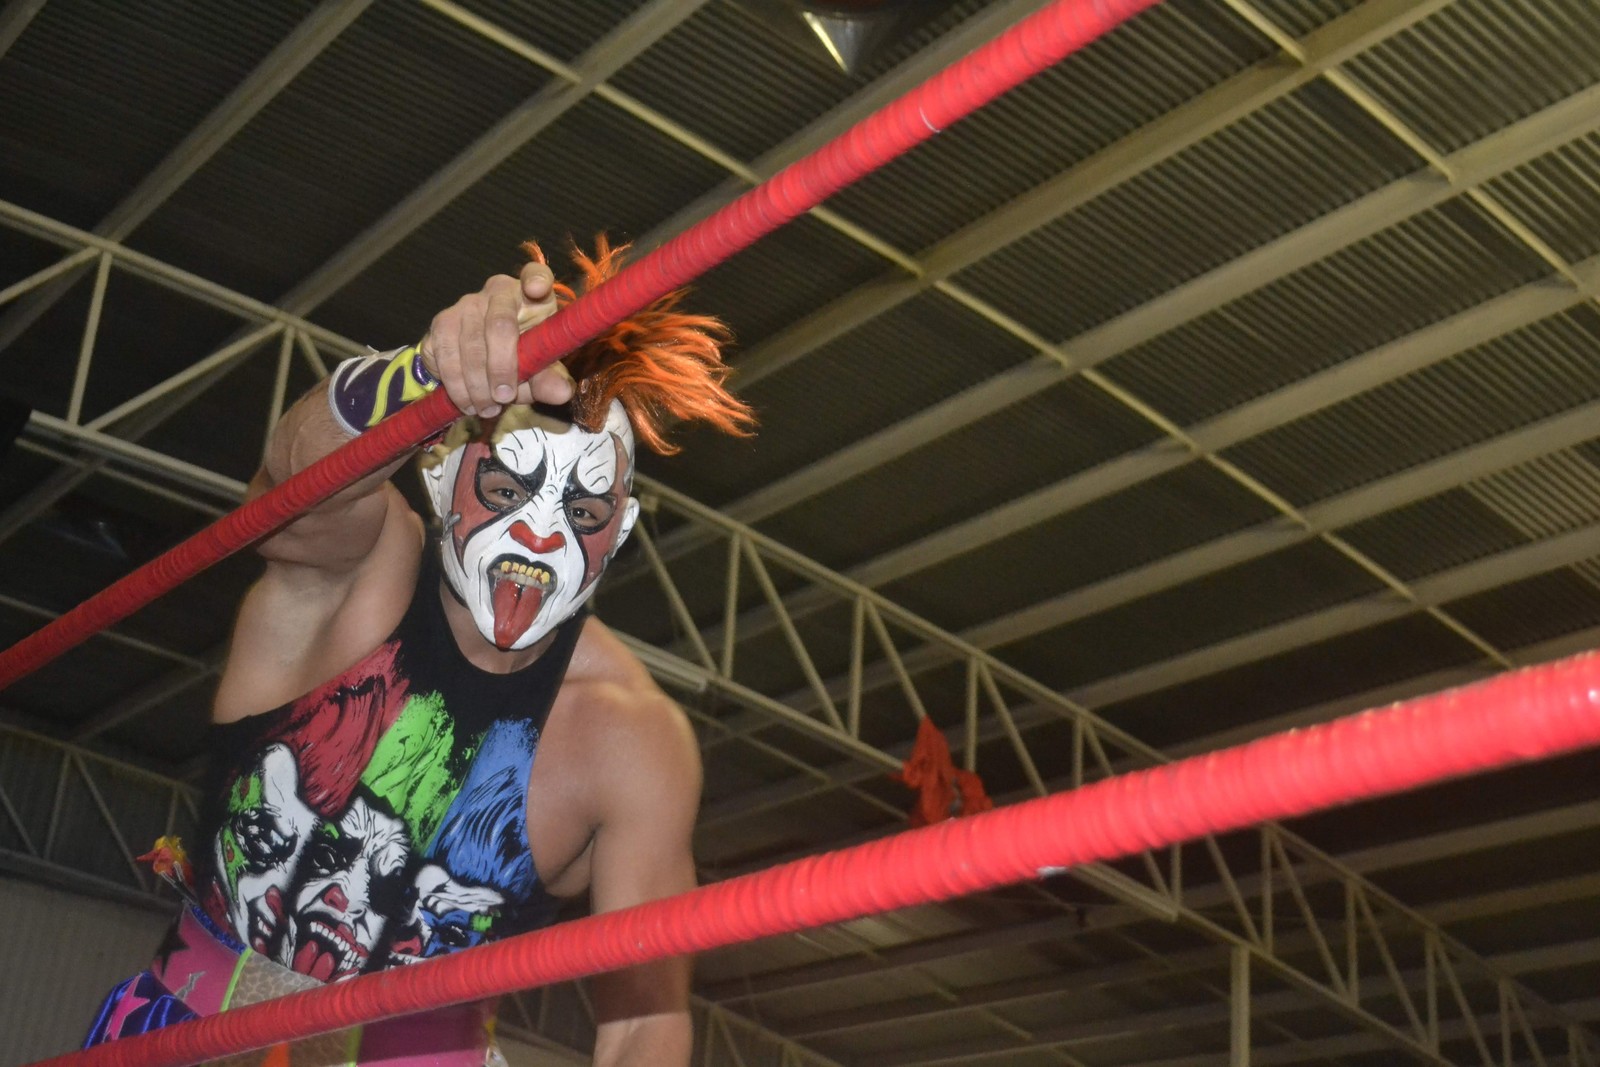 Psycho Clown estuvo el fin de semana en arenas de la Comarca Lagunera.